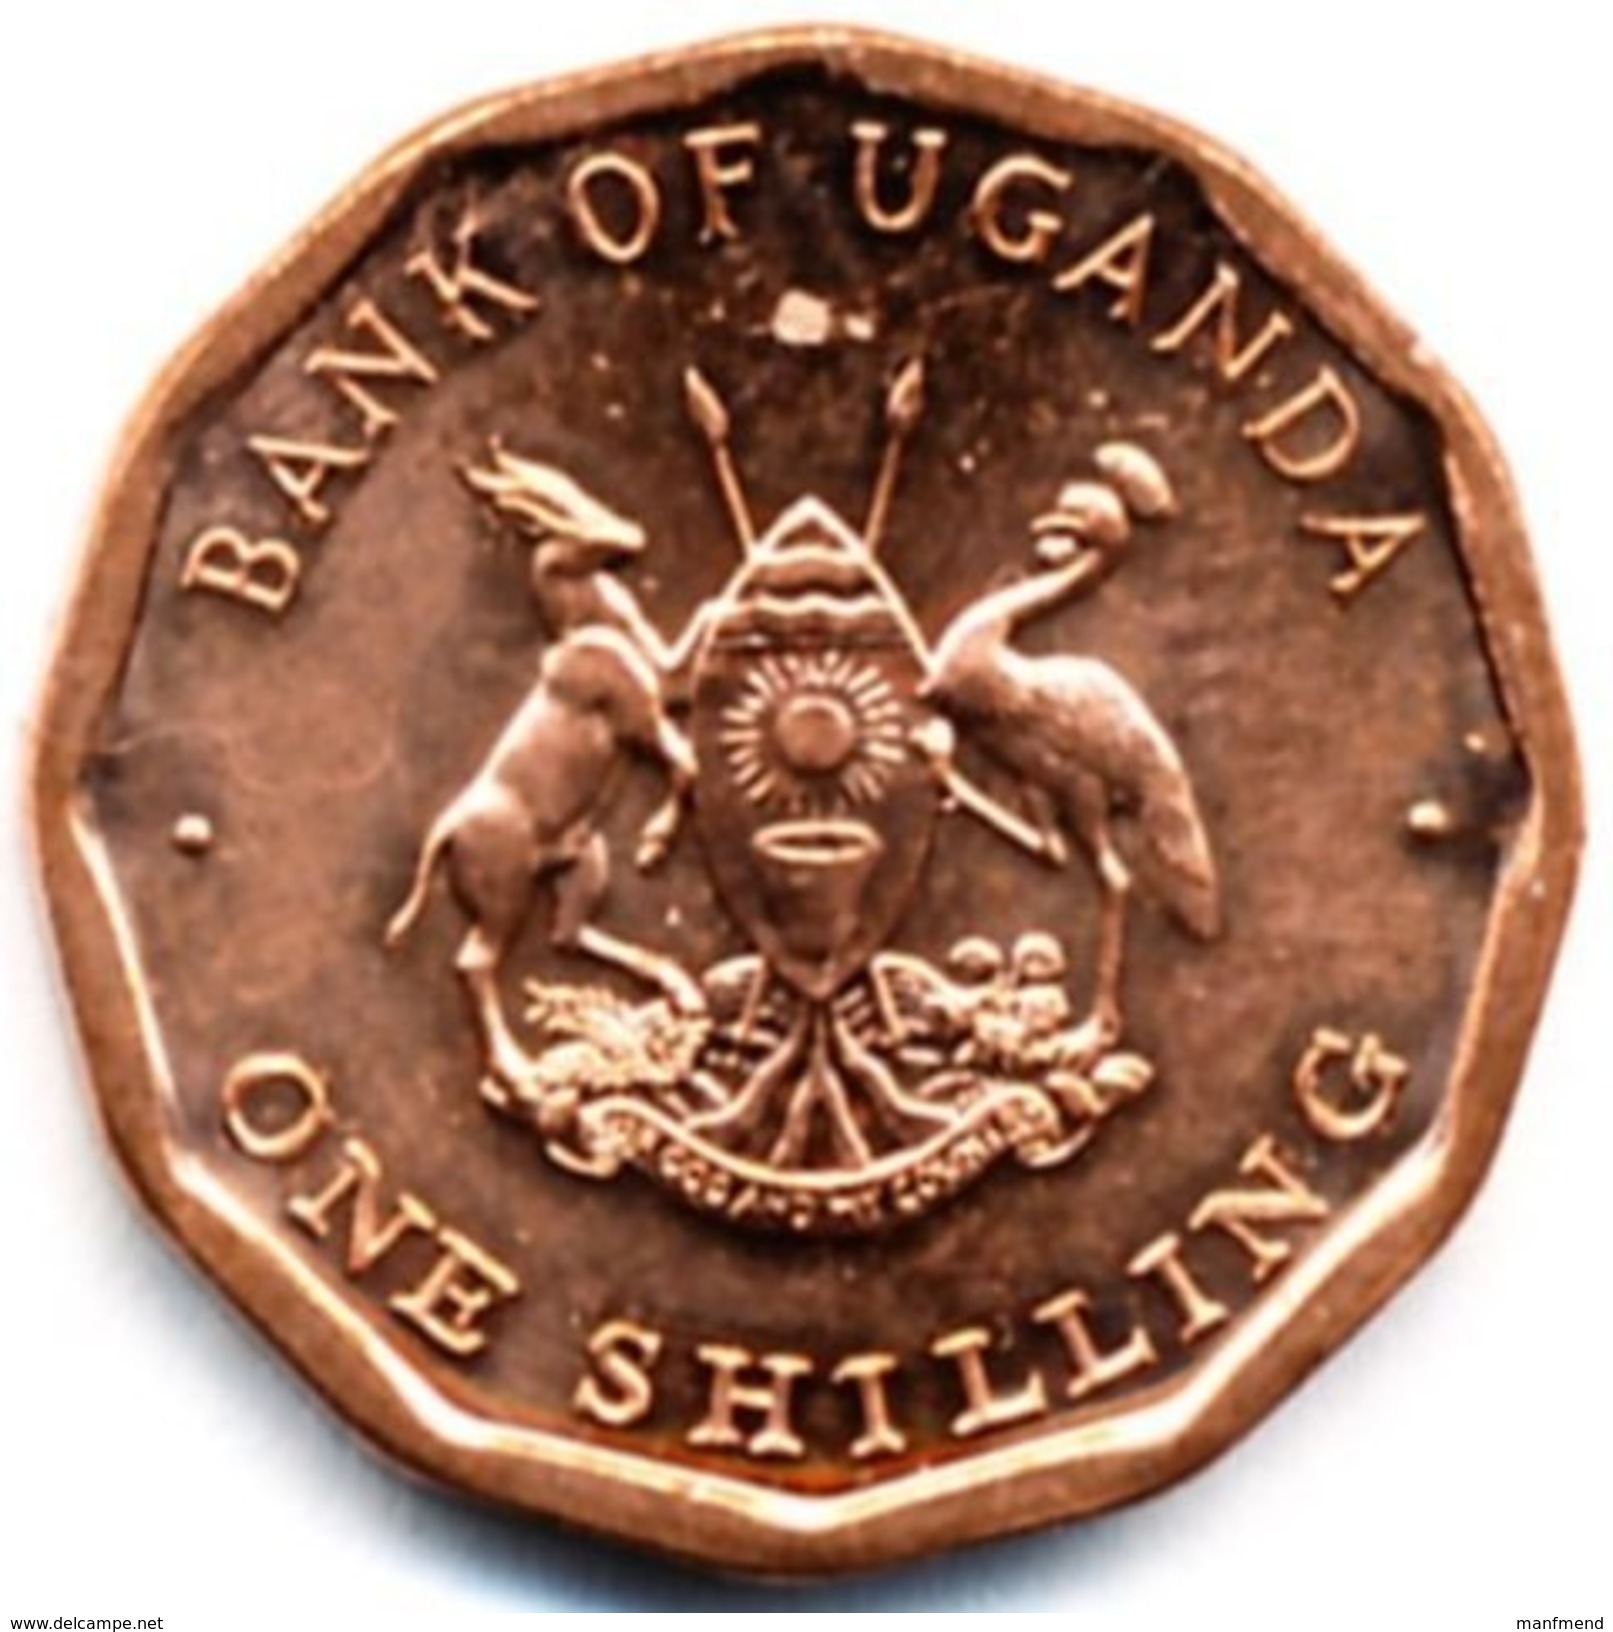 Uganda - 1987 - 1 Shilling - KM 27 - Unc - Uganda